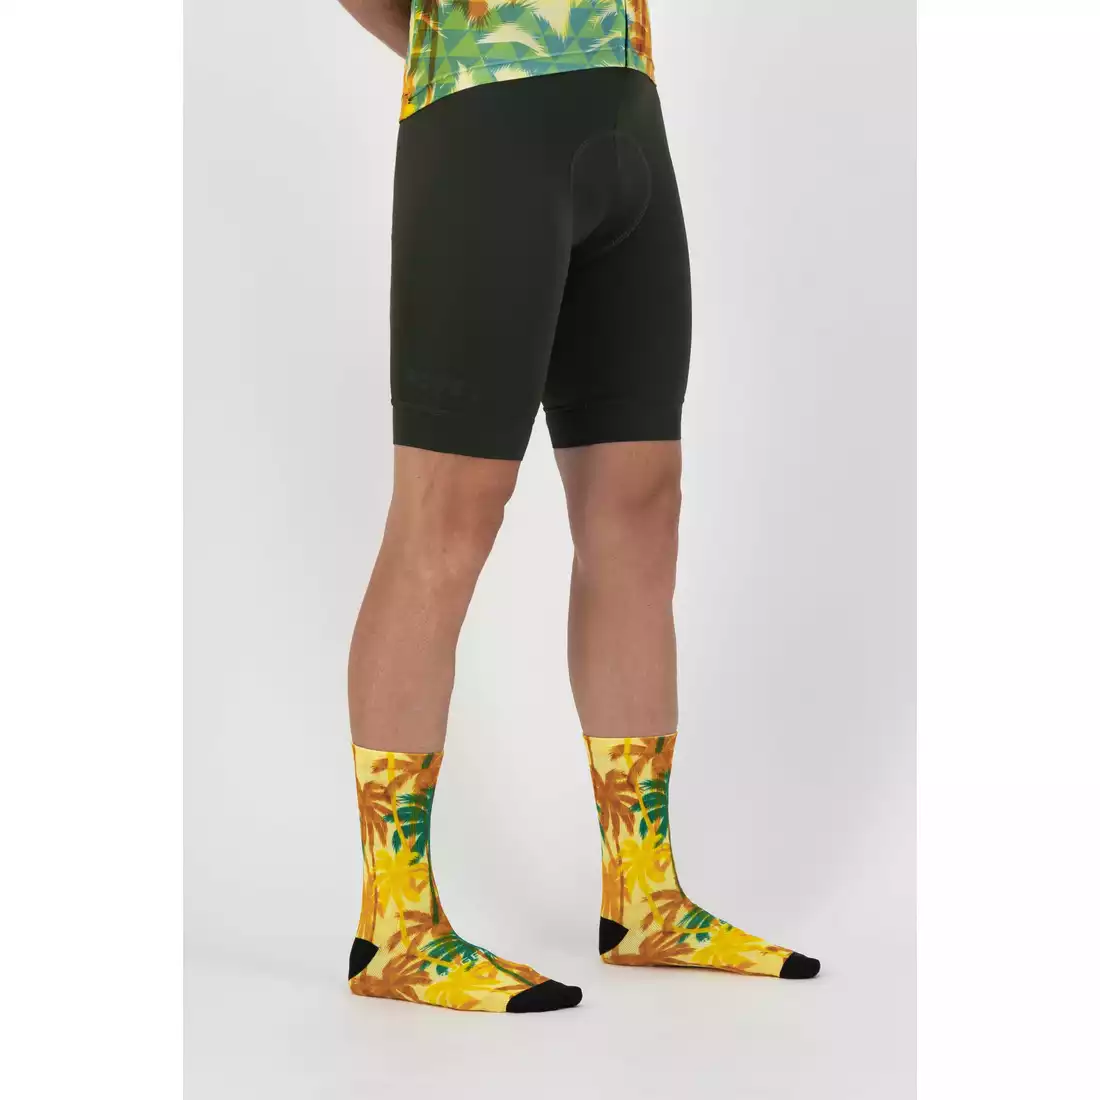 ROGELLI HAWAII Cycling socks, yellow